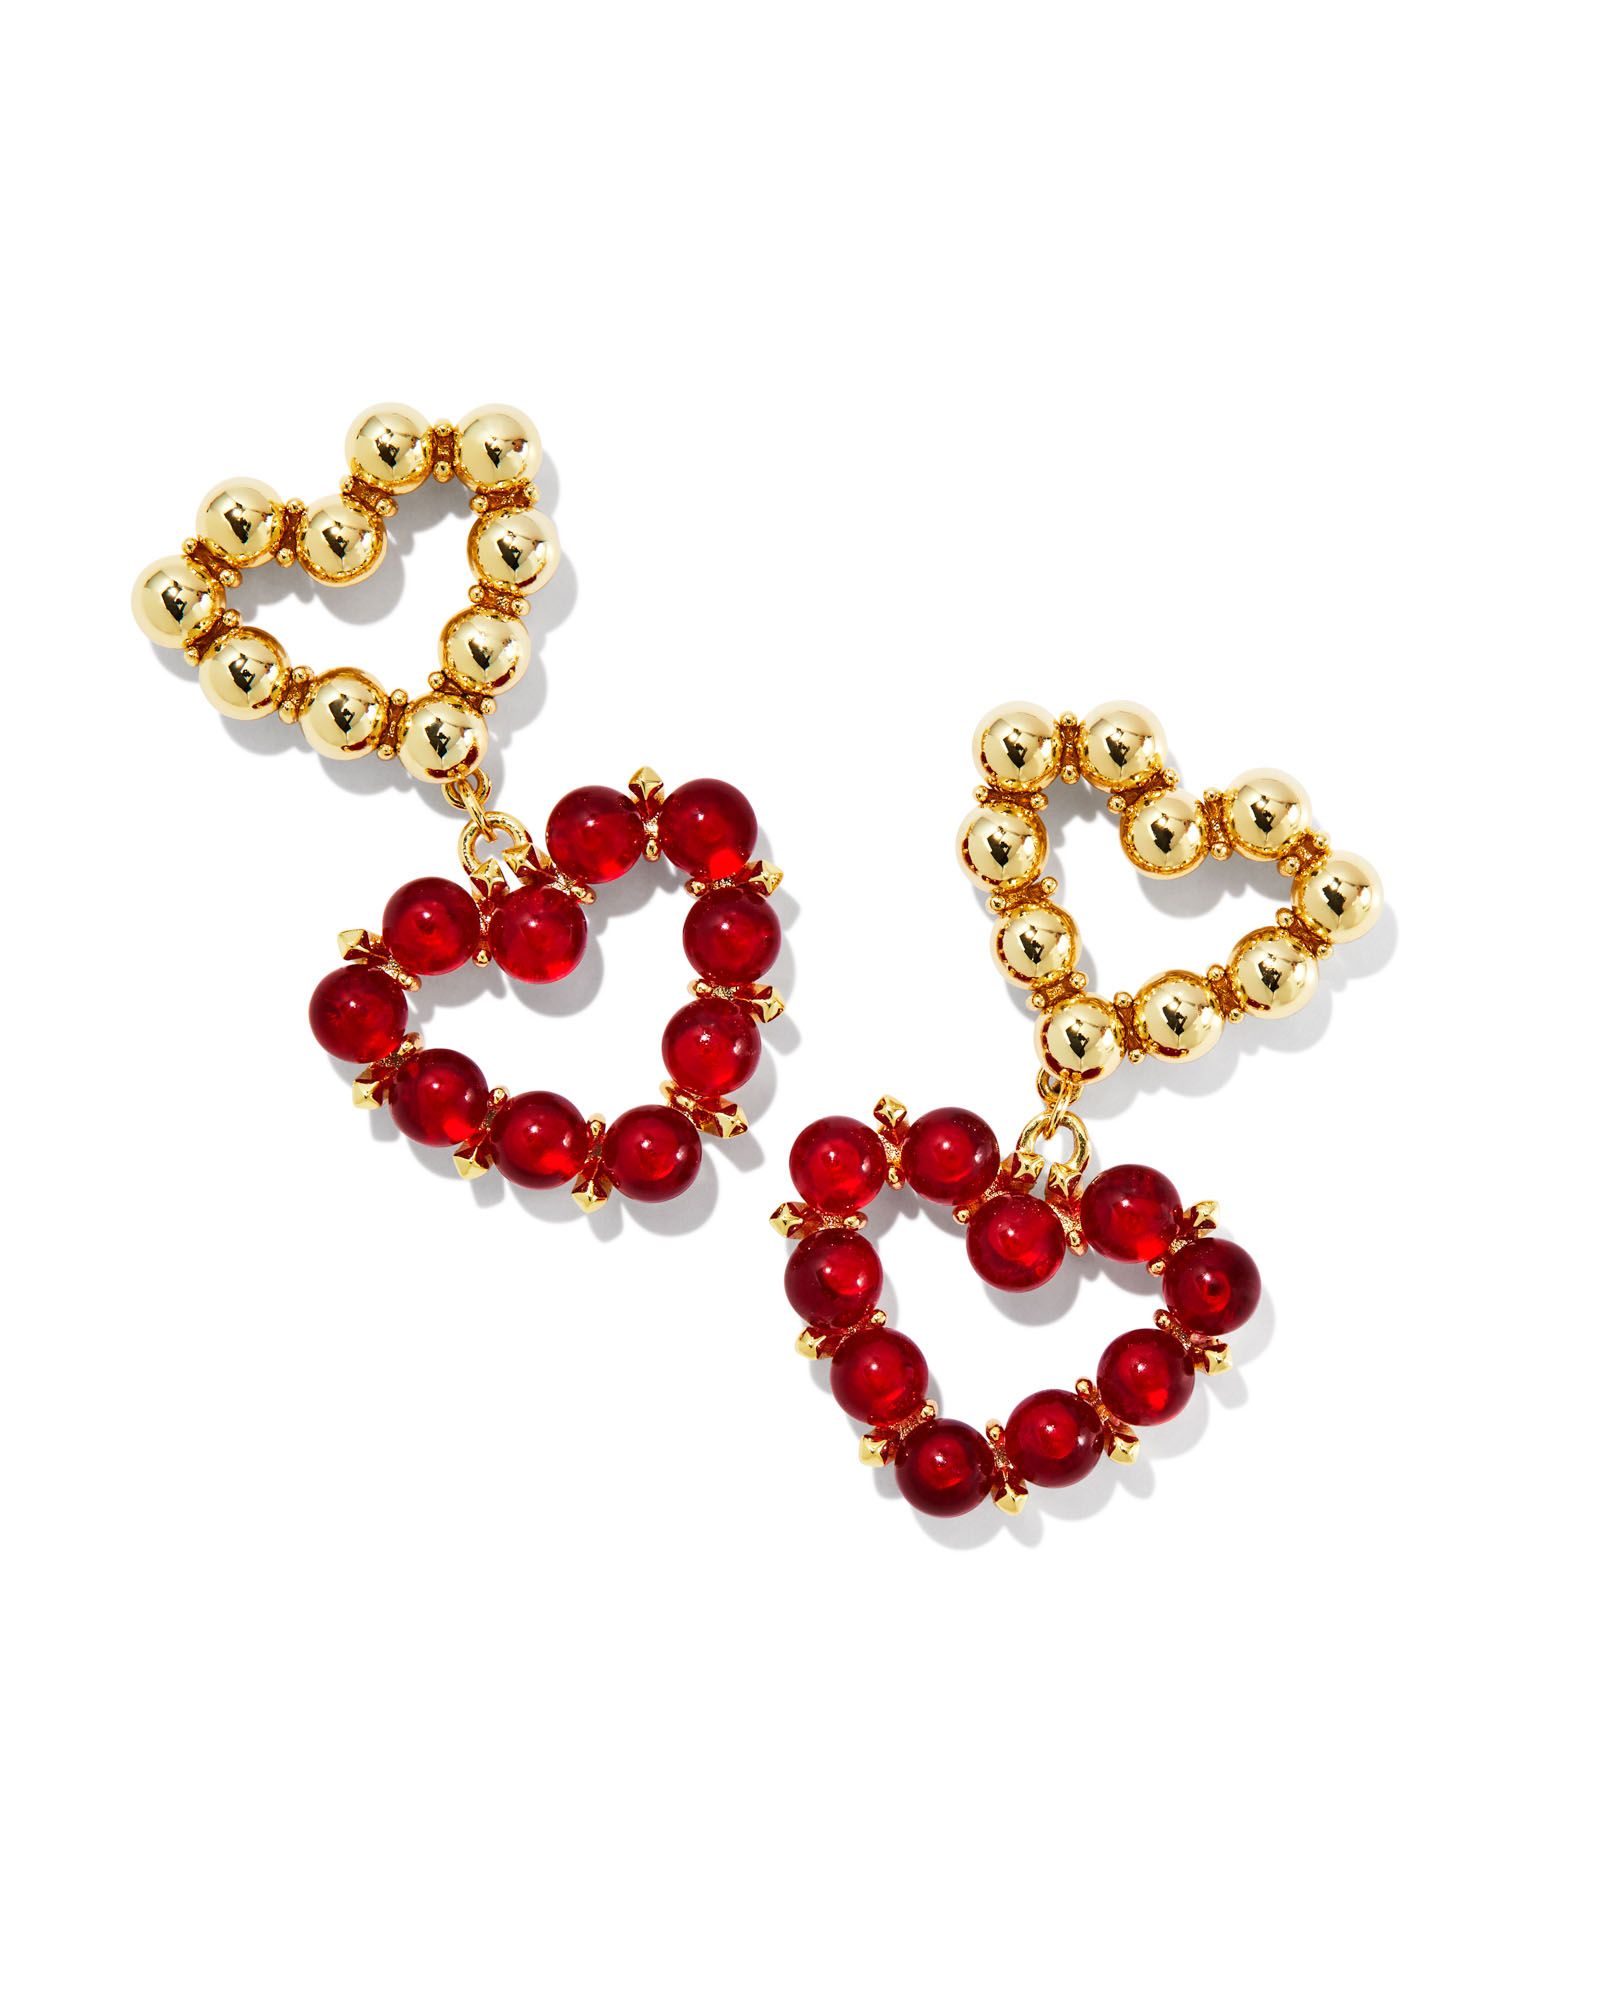 Ashton Gold Heart Drop Earrings in Red Glass | Kendra Scott | Kendra Scott